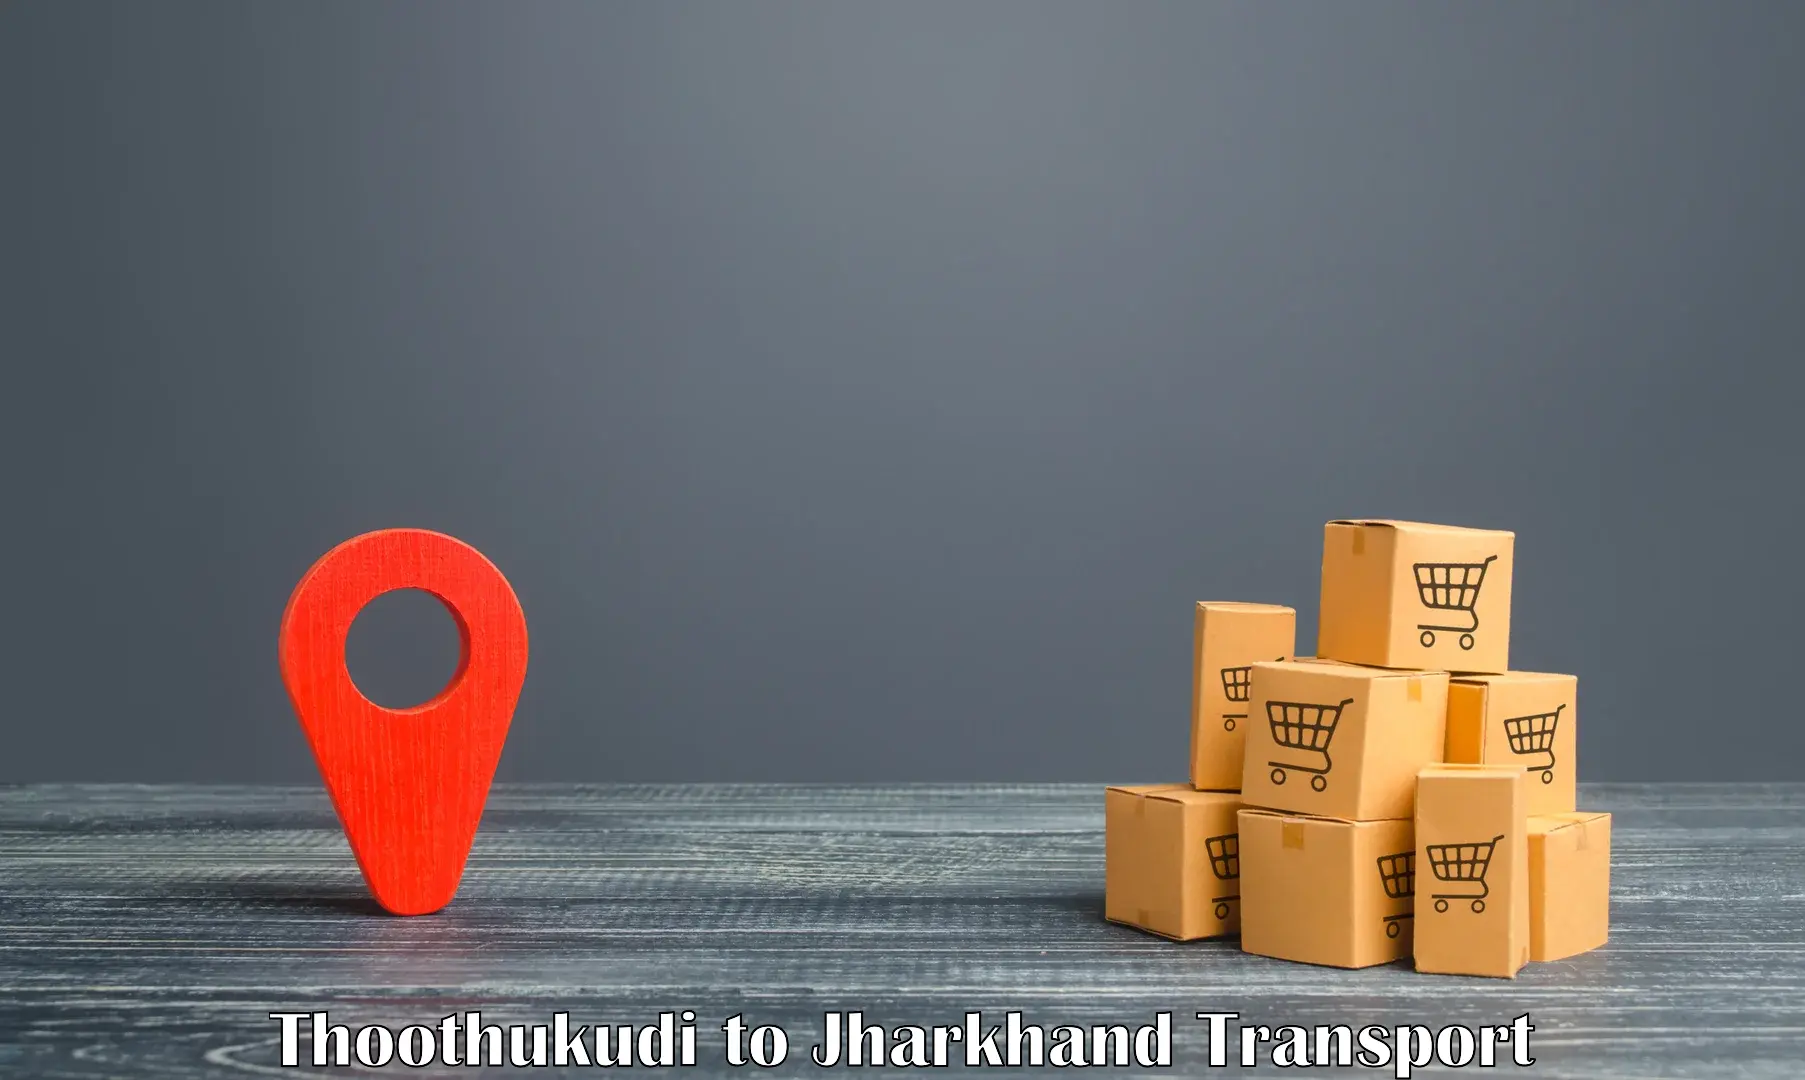 Daily parcel service transport Thoothukudi to Chandwa